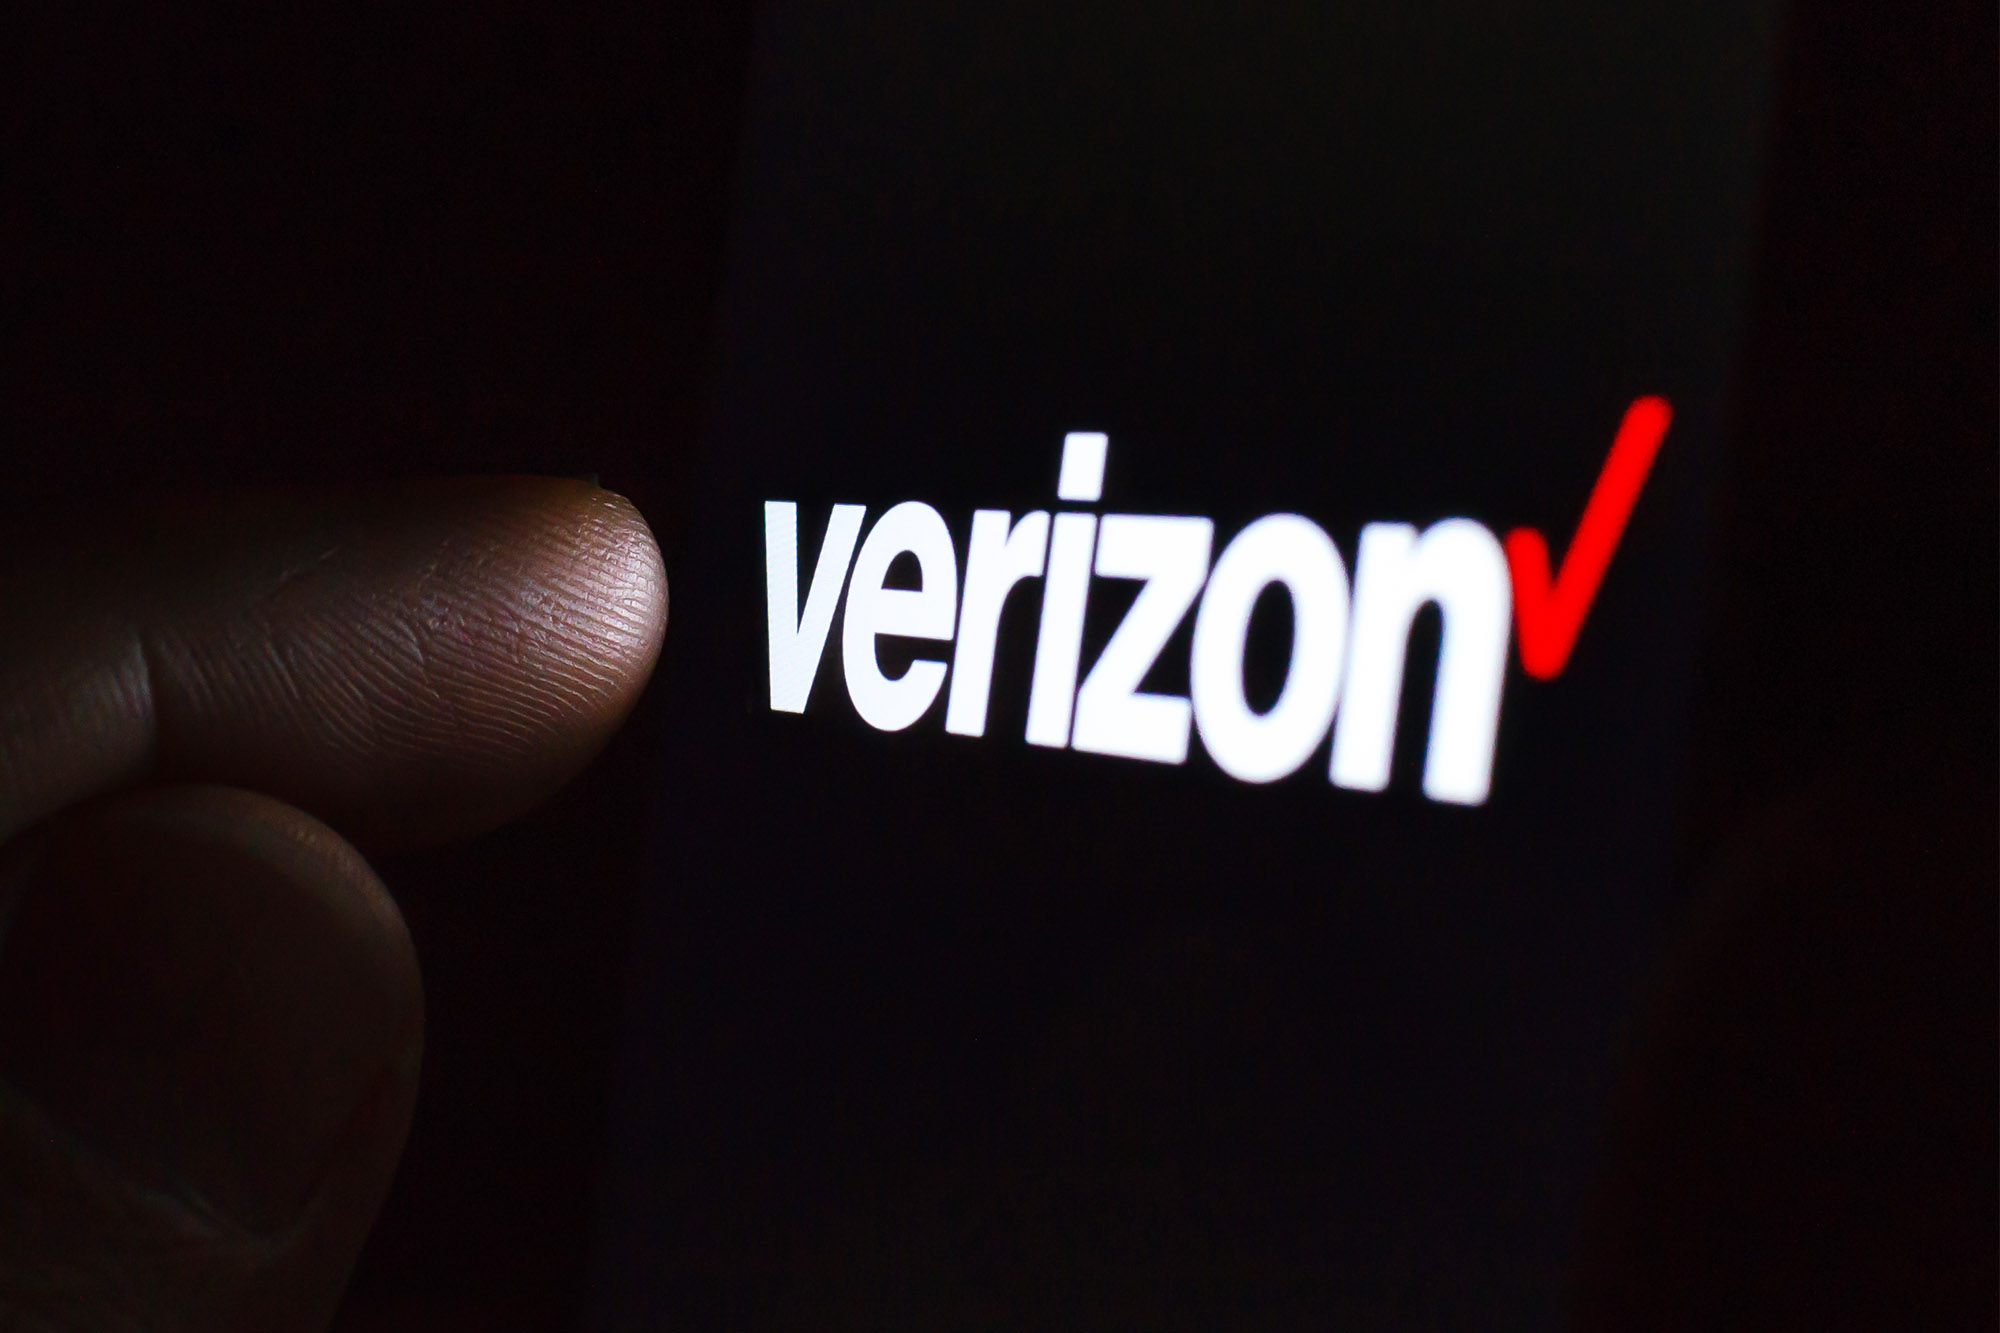 Logotipo da Verizon em uma tela de smartphone em um quarto escuro e um dedo tocando nele.